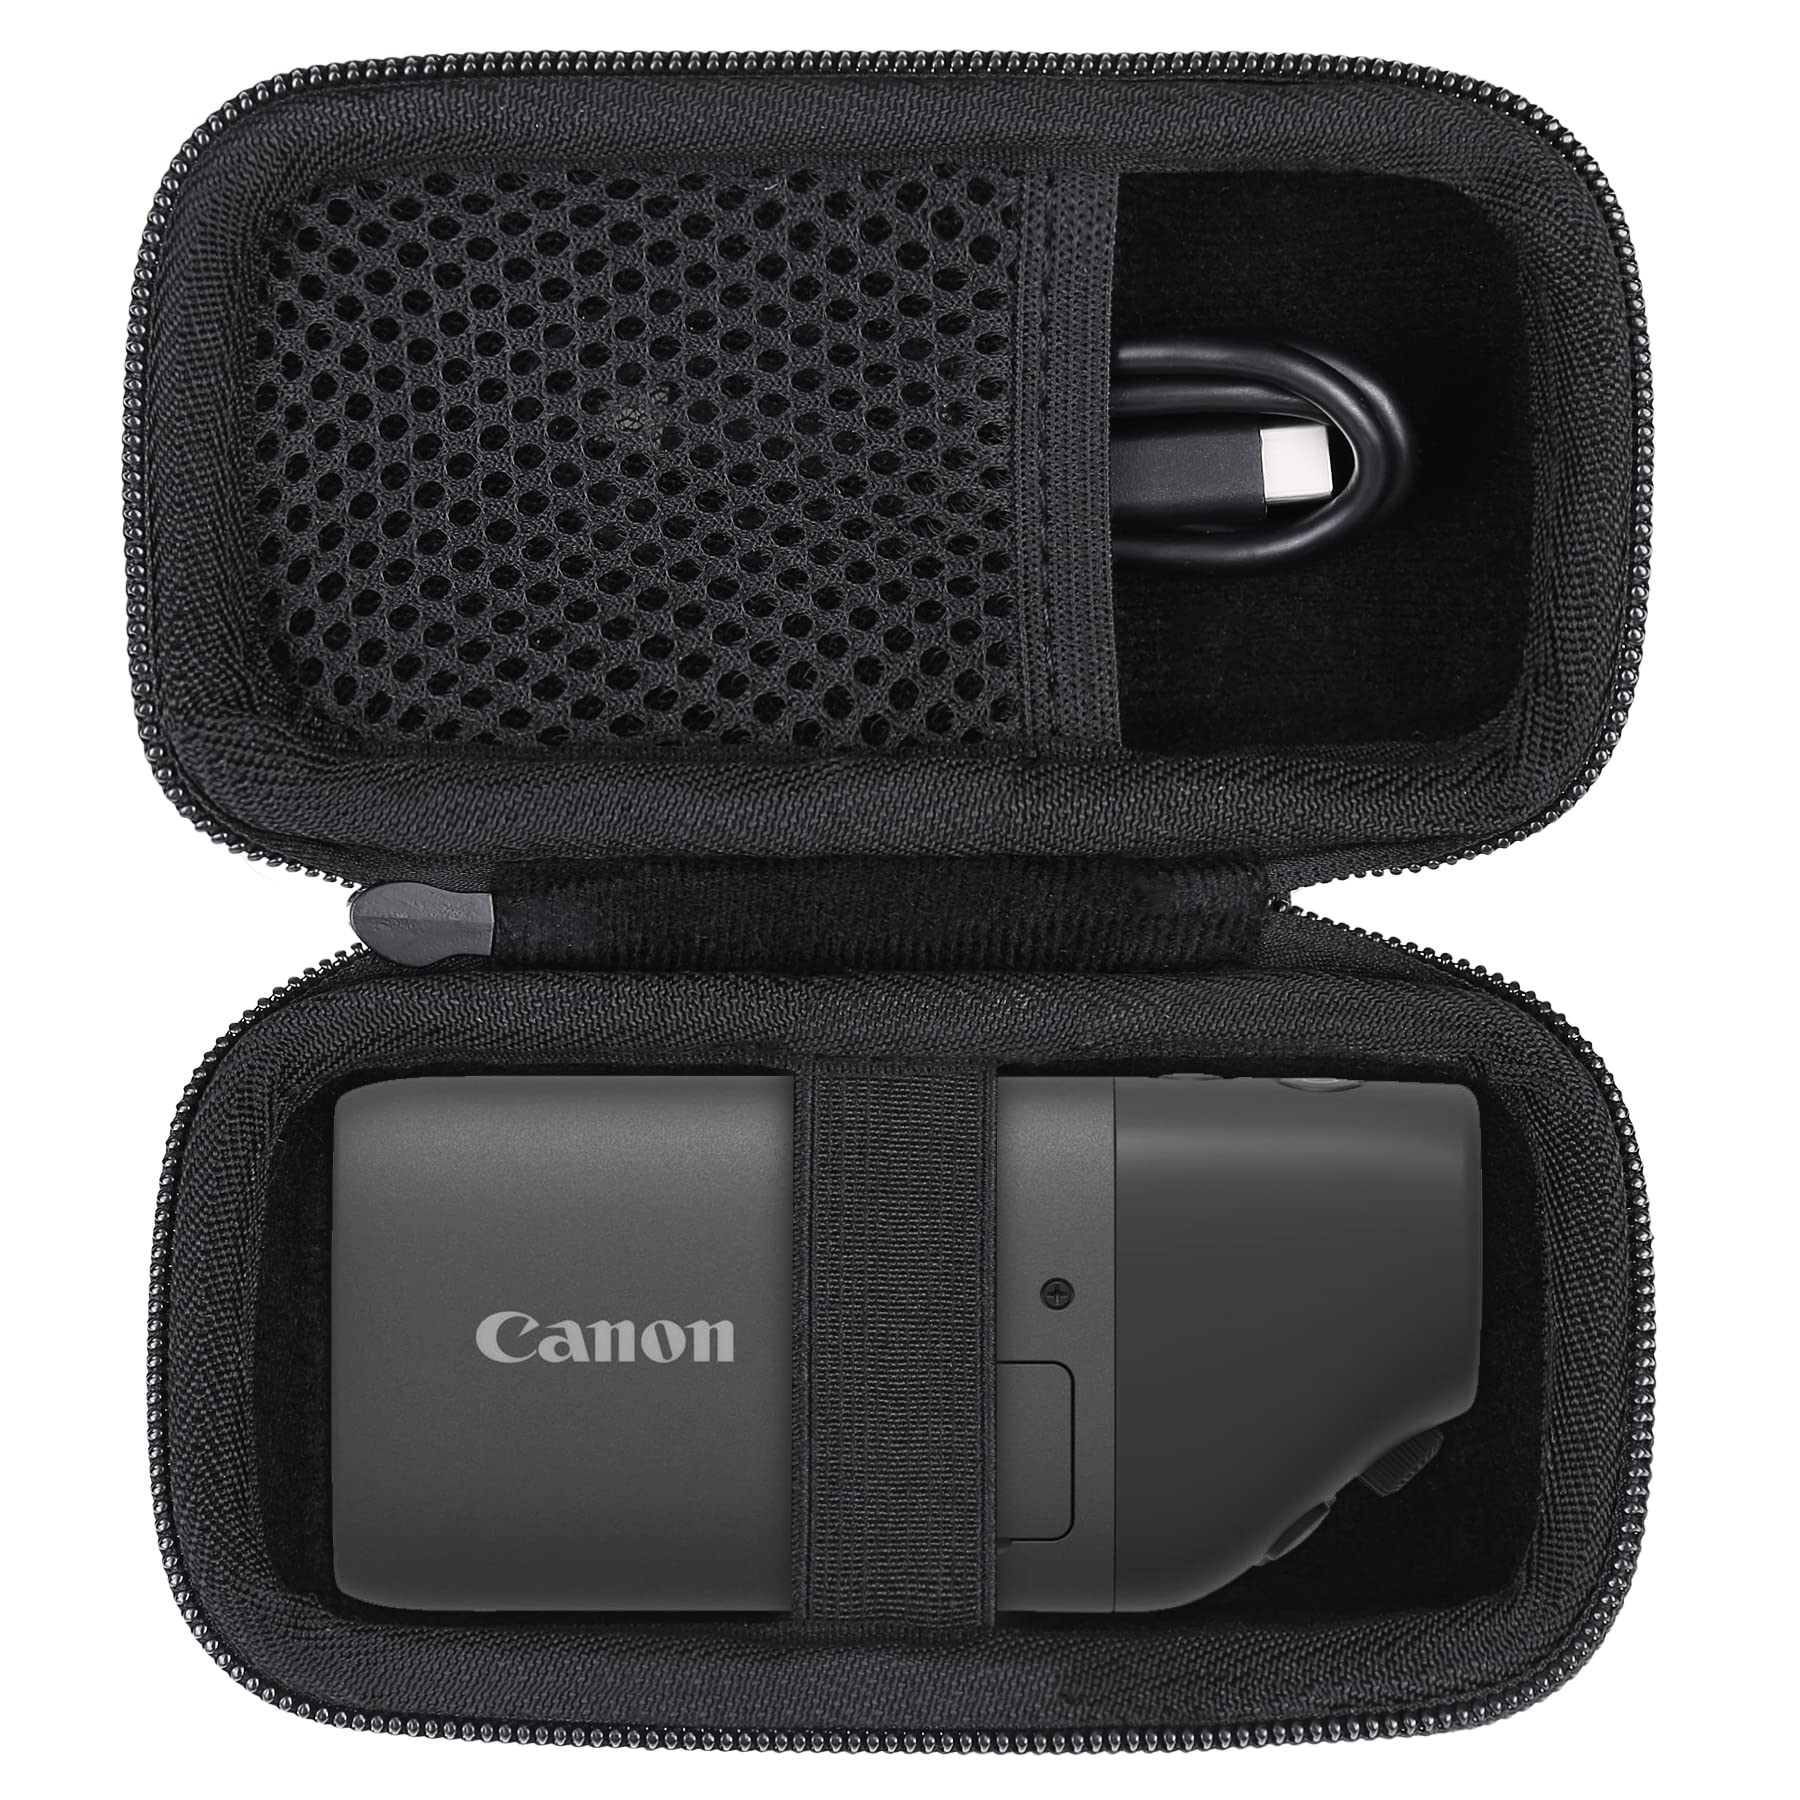 Canon（キヤノン）コンパクトデジタルカメラ PowerShot ZOOM Black Edition 対応 専用収納ケース（ケースのみ）- Aenllosi